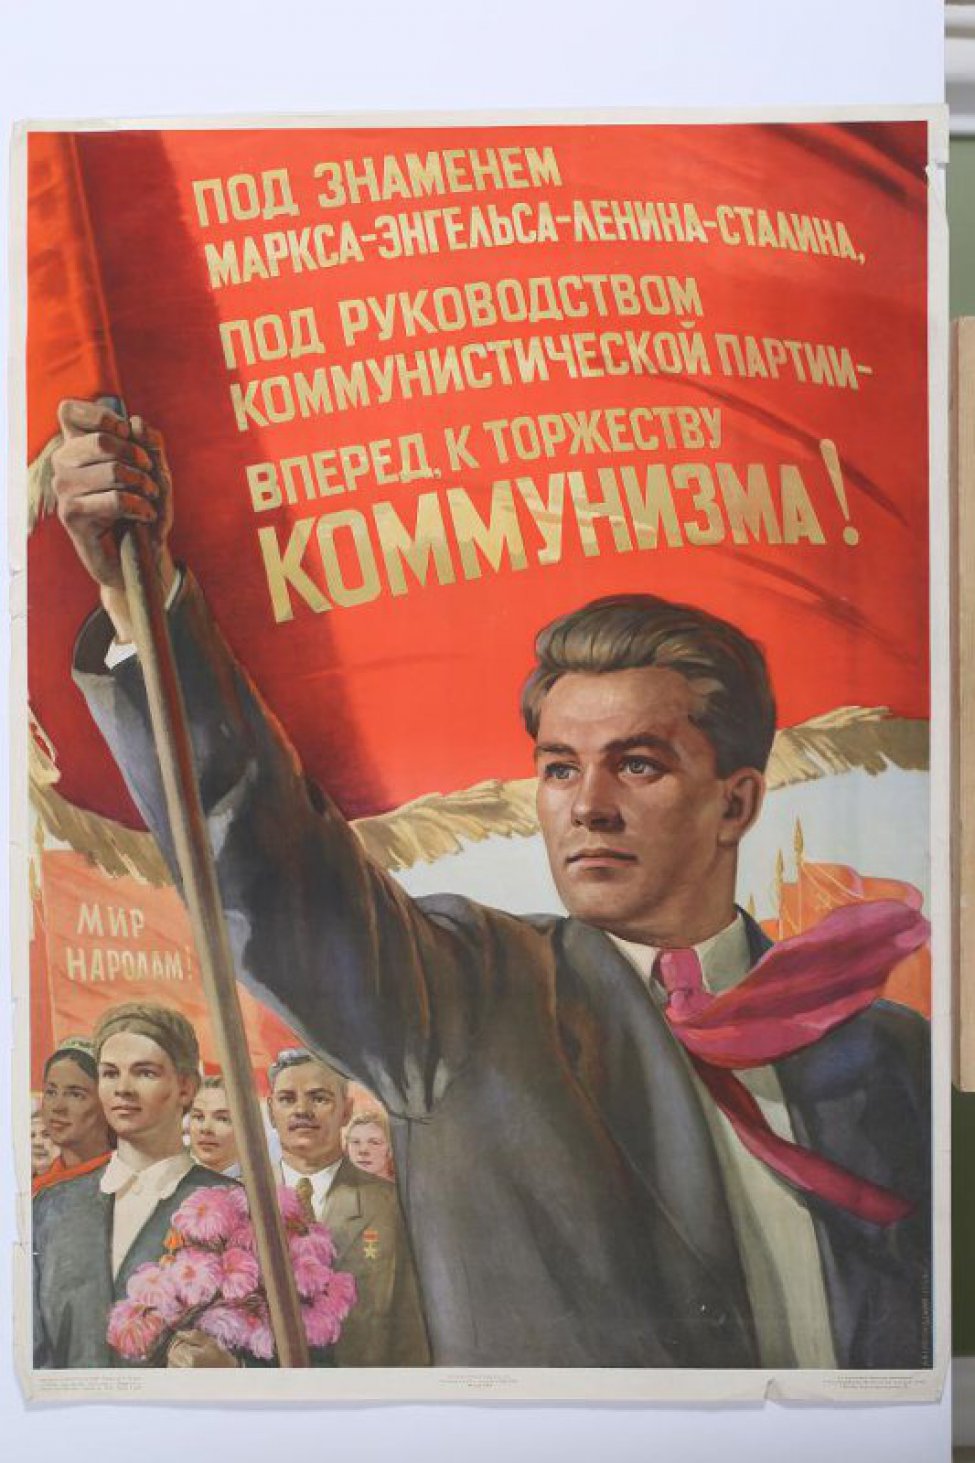 Изображен молодой мужчина погрудно в алом галстуке с красным знаменем в правой руке.На знамени текст. Справа от него мужчины и женщины с цветами и знаменами.Справа внизу сбоку: " Б.Белопольский 1954г."